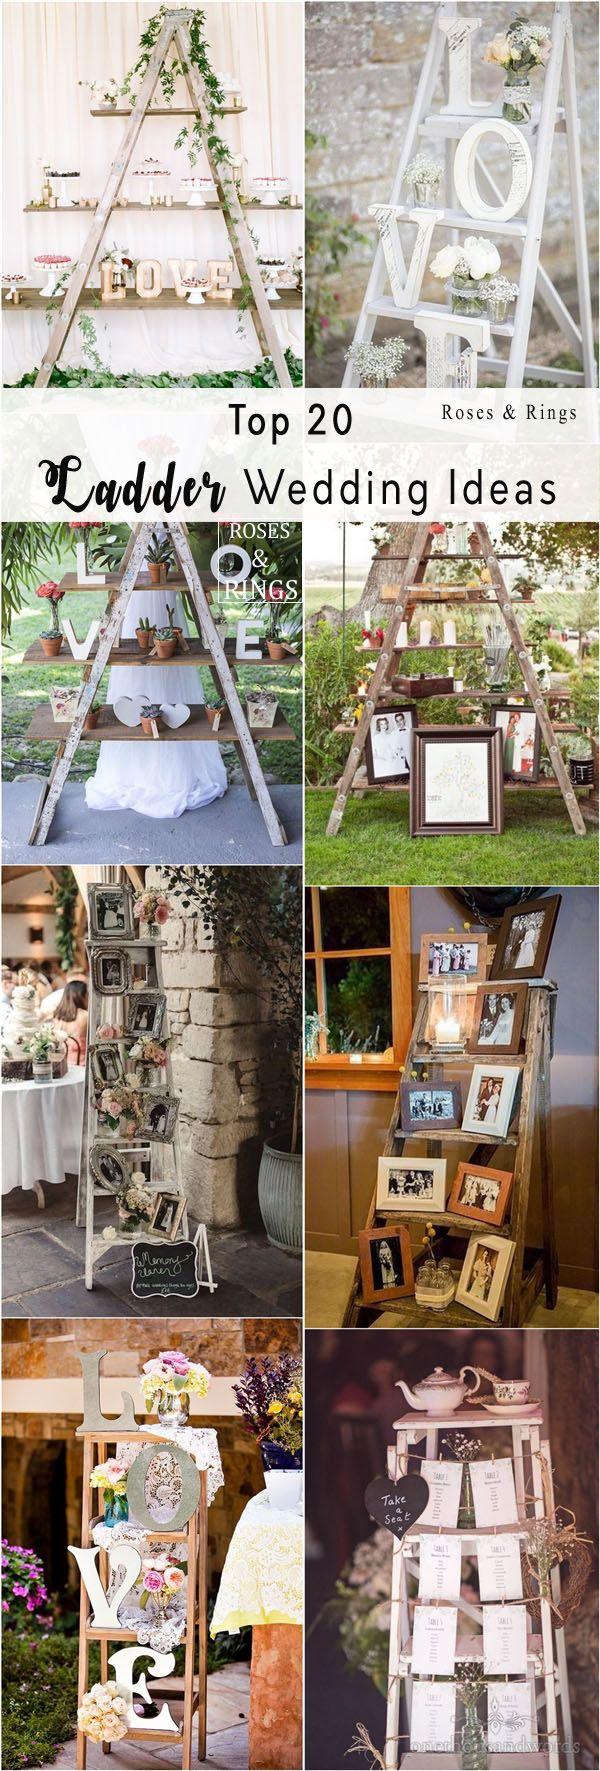 Wedding - Top 20 Vintage Wooden Ladder Wedding Decor Ideas